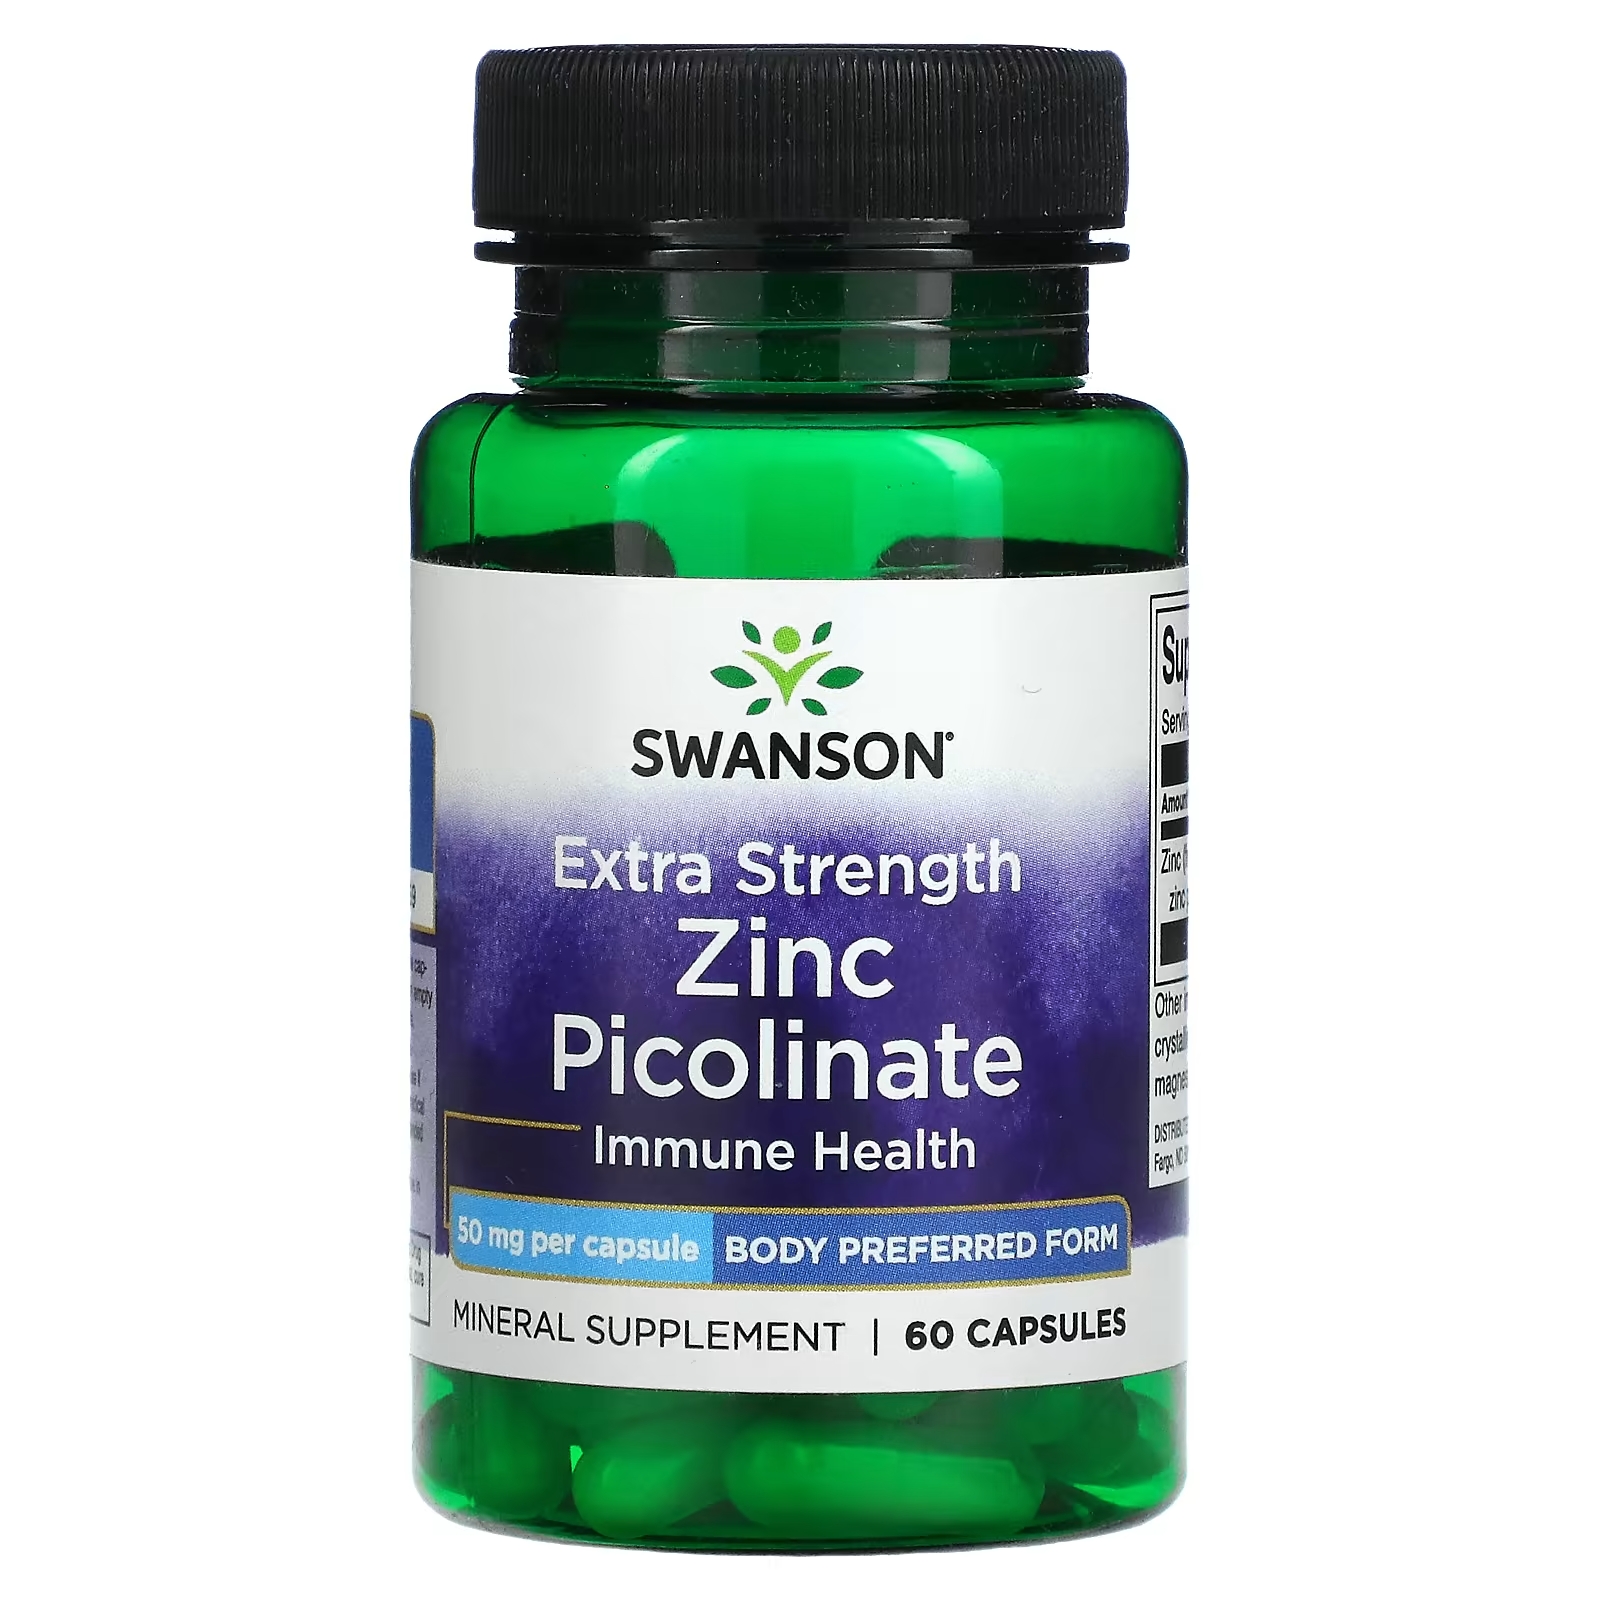 Swanson Zinc Citrate 30 MG 60 капс. Пиколинат цинка 22 мг. Swanson Zinc Citrate (50 MG Elemental) 60 капс. Swanson цинк, цитрат, 30 мг, Zinc Citrate 30 MG,Свонсон,Свэнсон,Свенсон, 60 капсул. Zinc picolinate 50